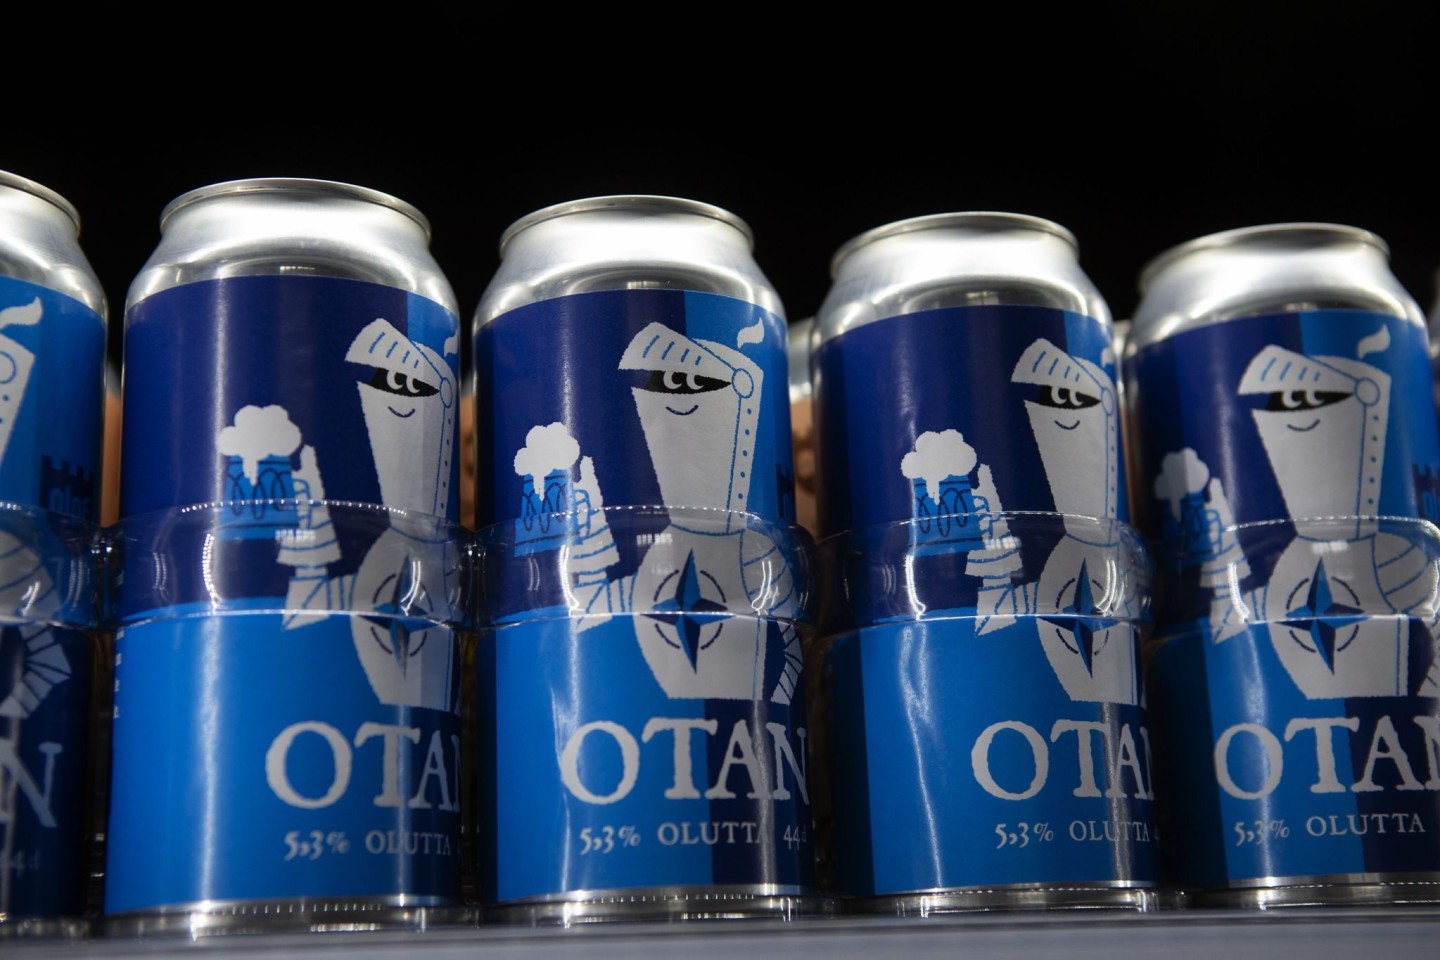 Bierdosen der Olaf Brewing Company der Marke Otan (Nato). Otan ist die Abkürzung für die Nato in den romanischen Sprachen.